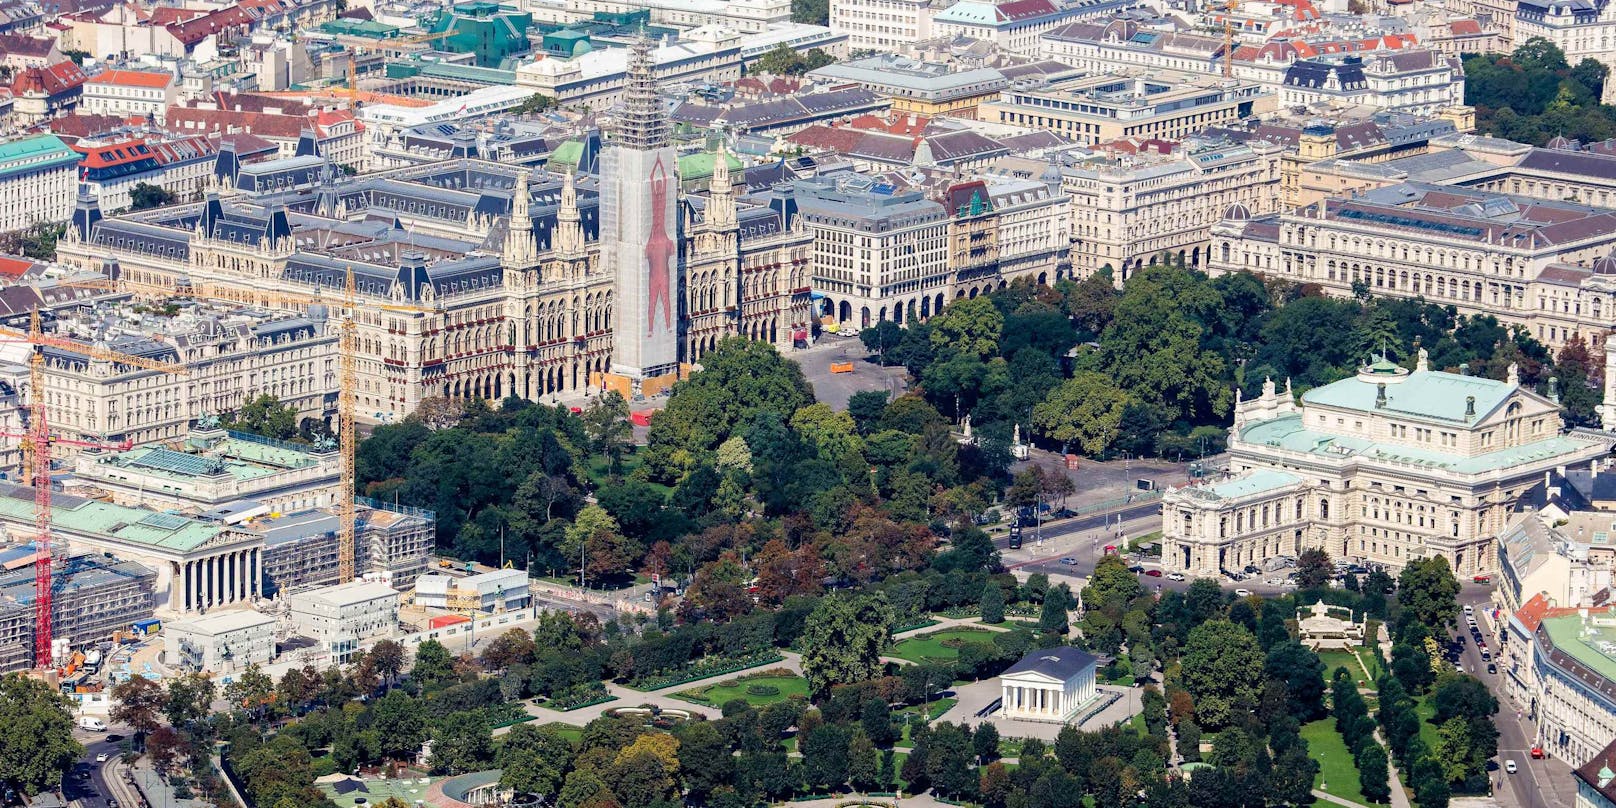 Blick auf das Rathaus, im Vordergrund das Burgtheater und der Volksgarten